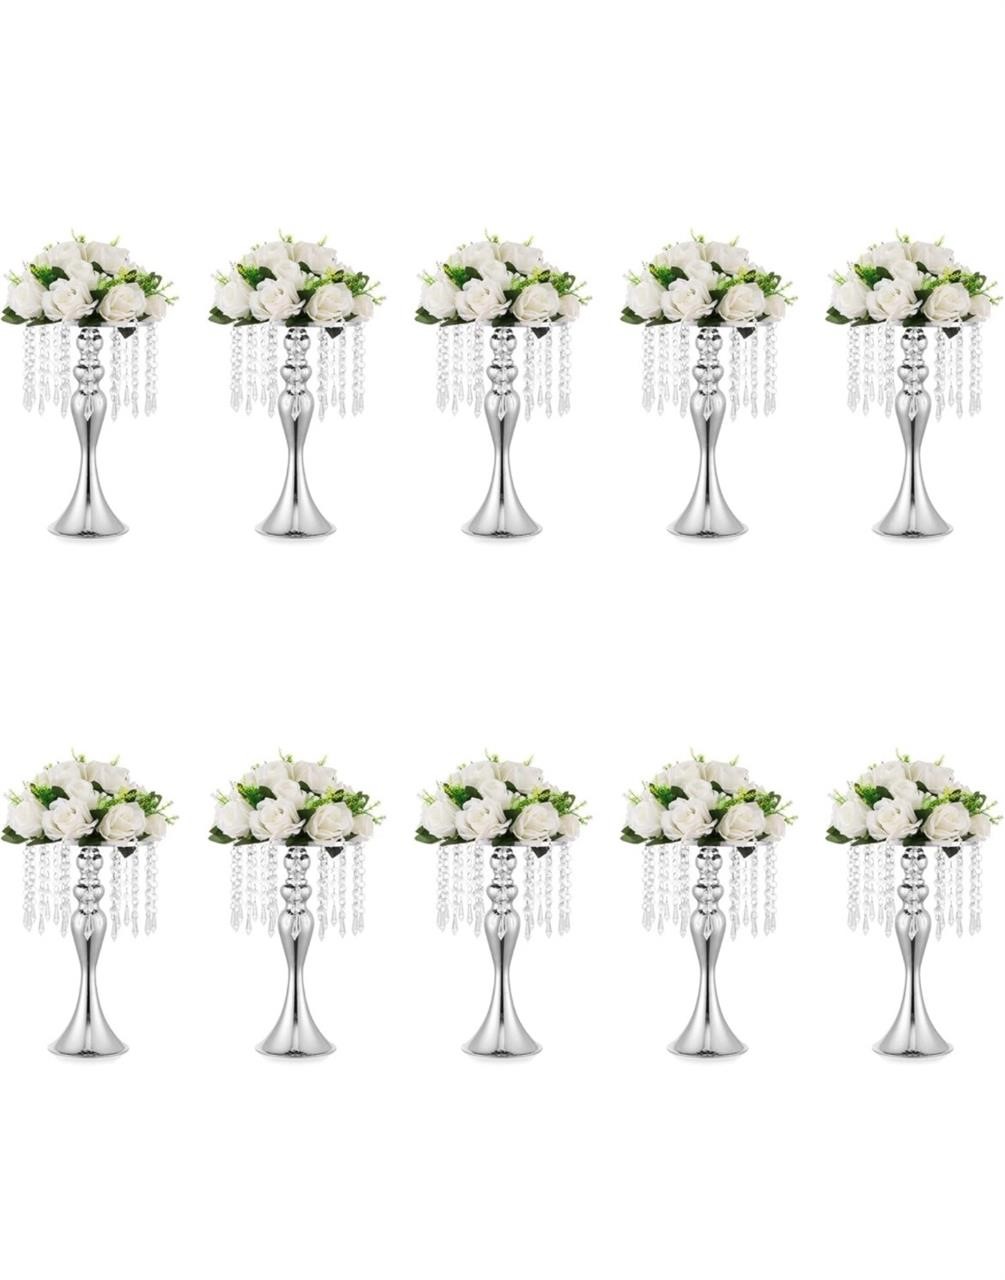 $226 10Pcs 13.8" Vases for Centerpieces